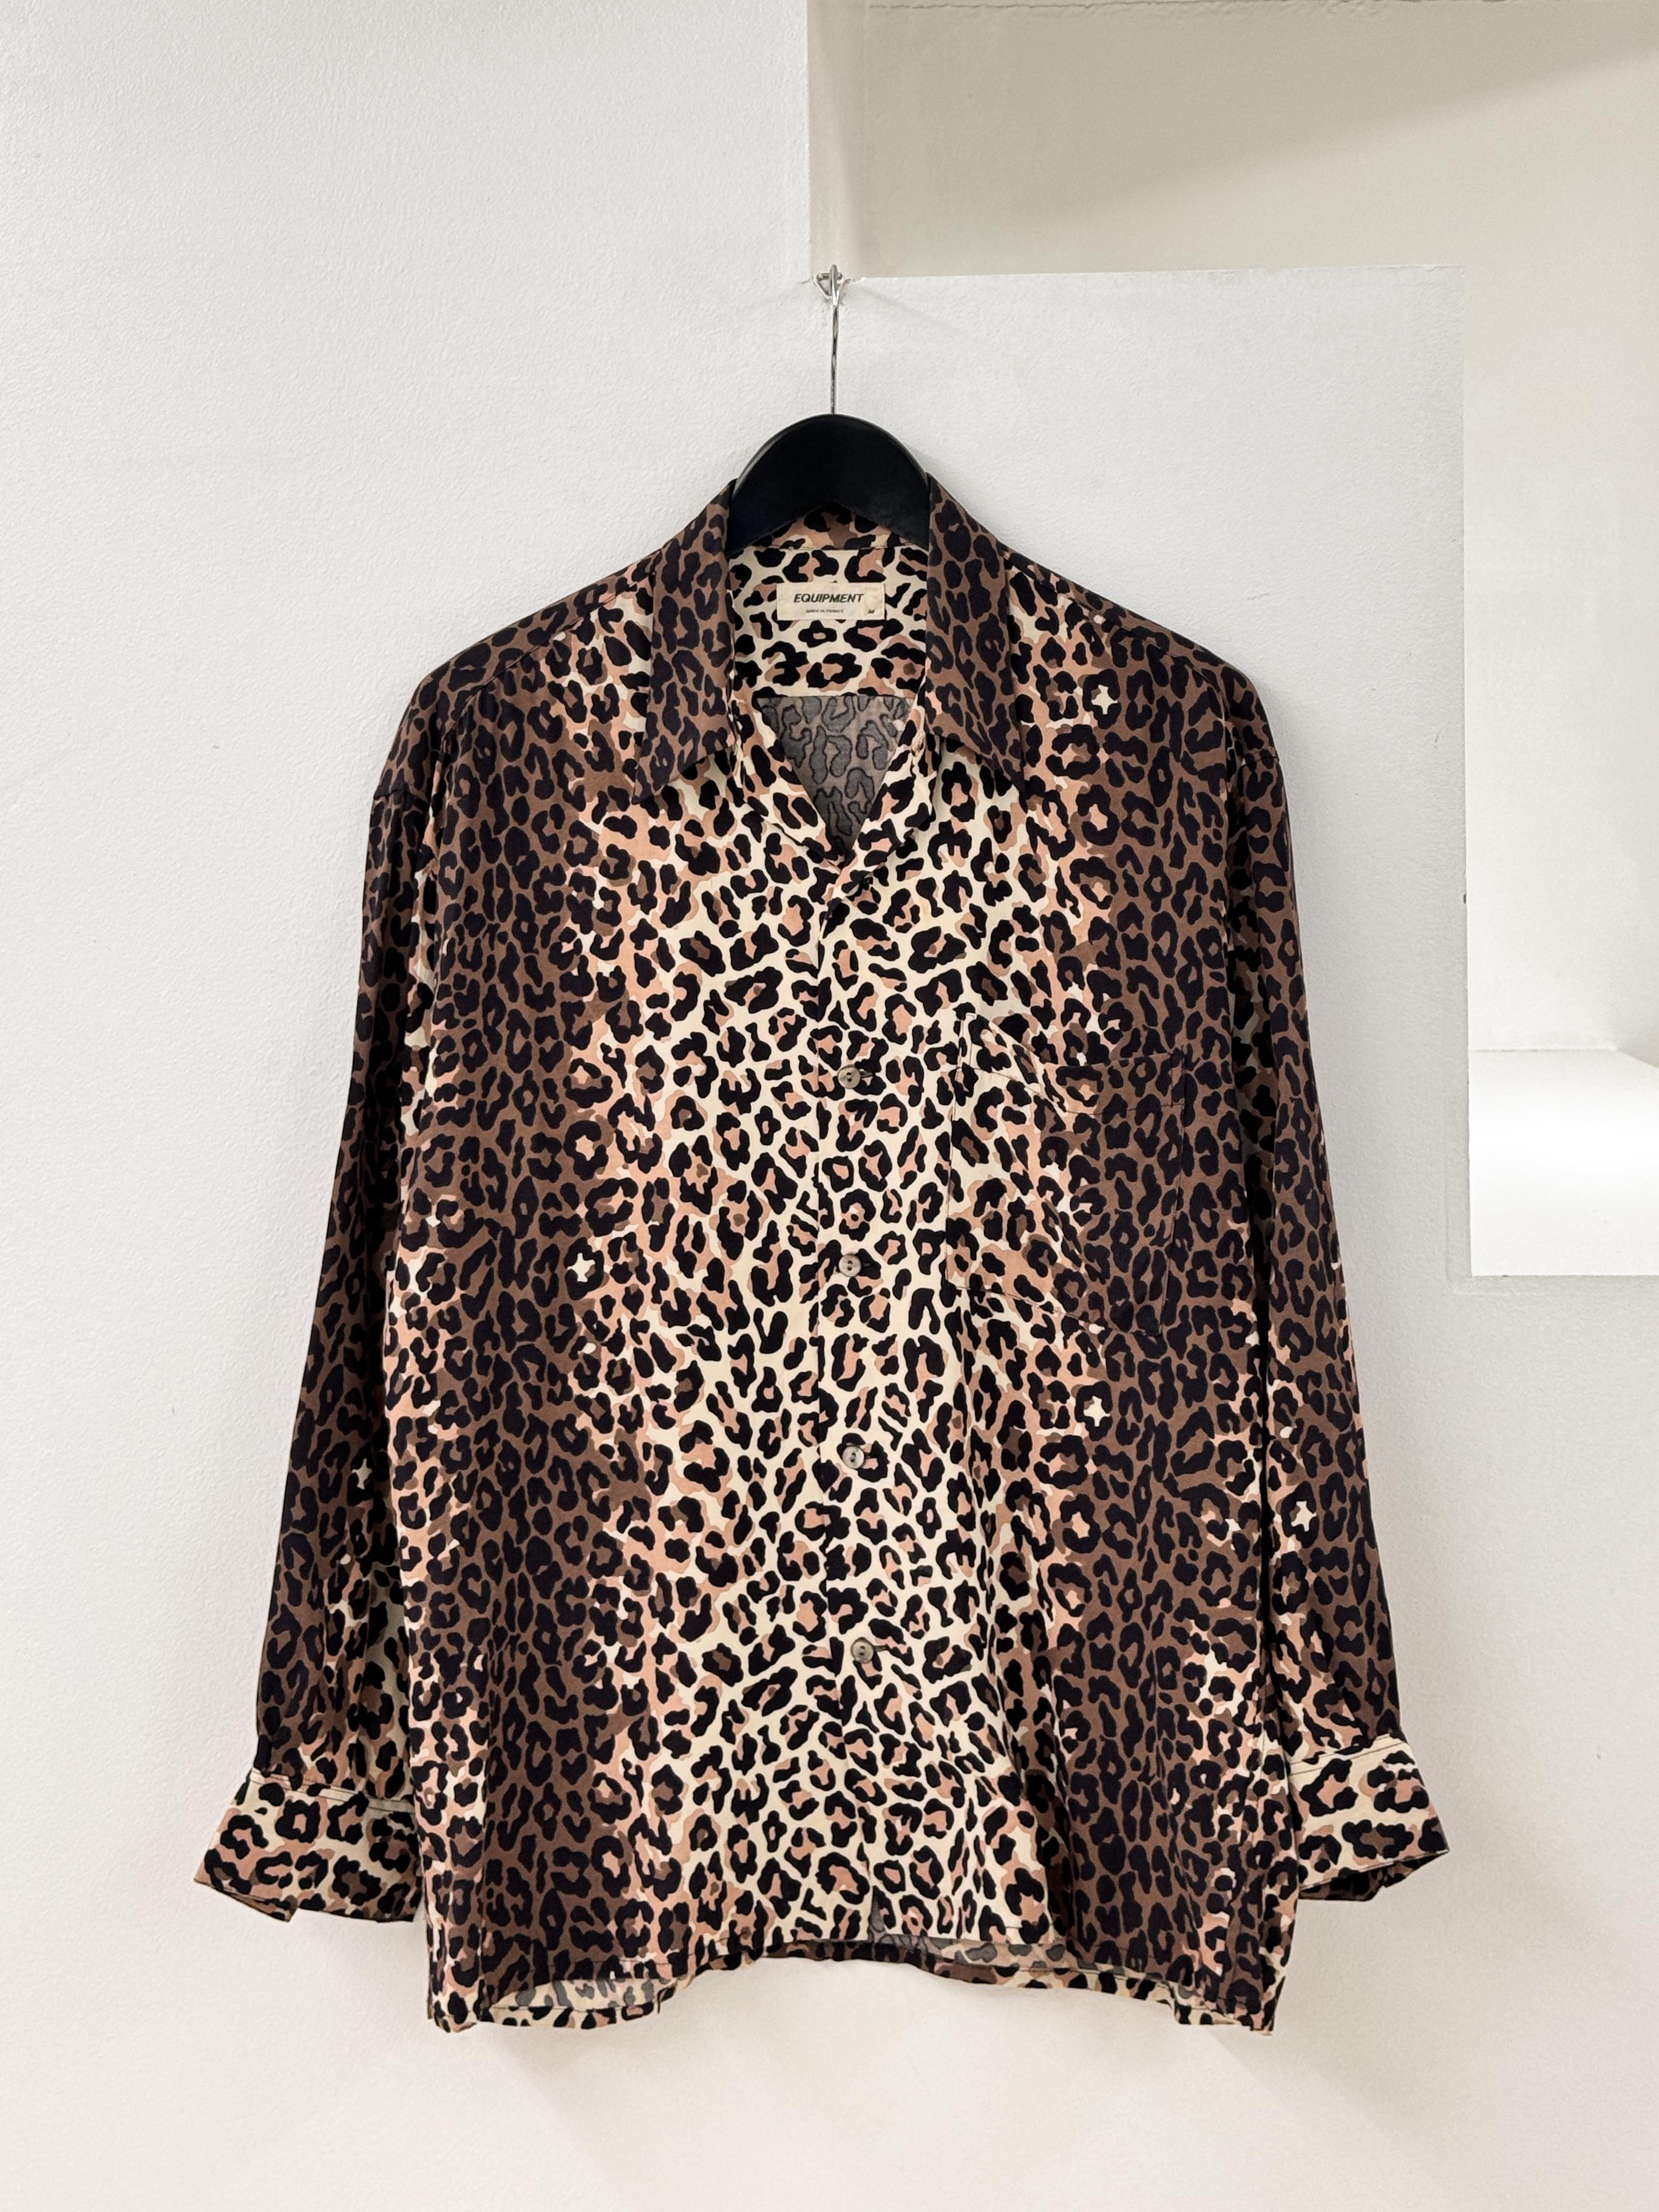 Equipment leopard shirt, France made